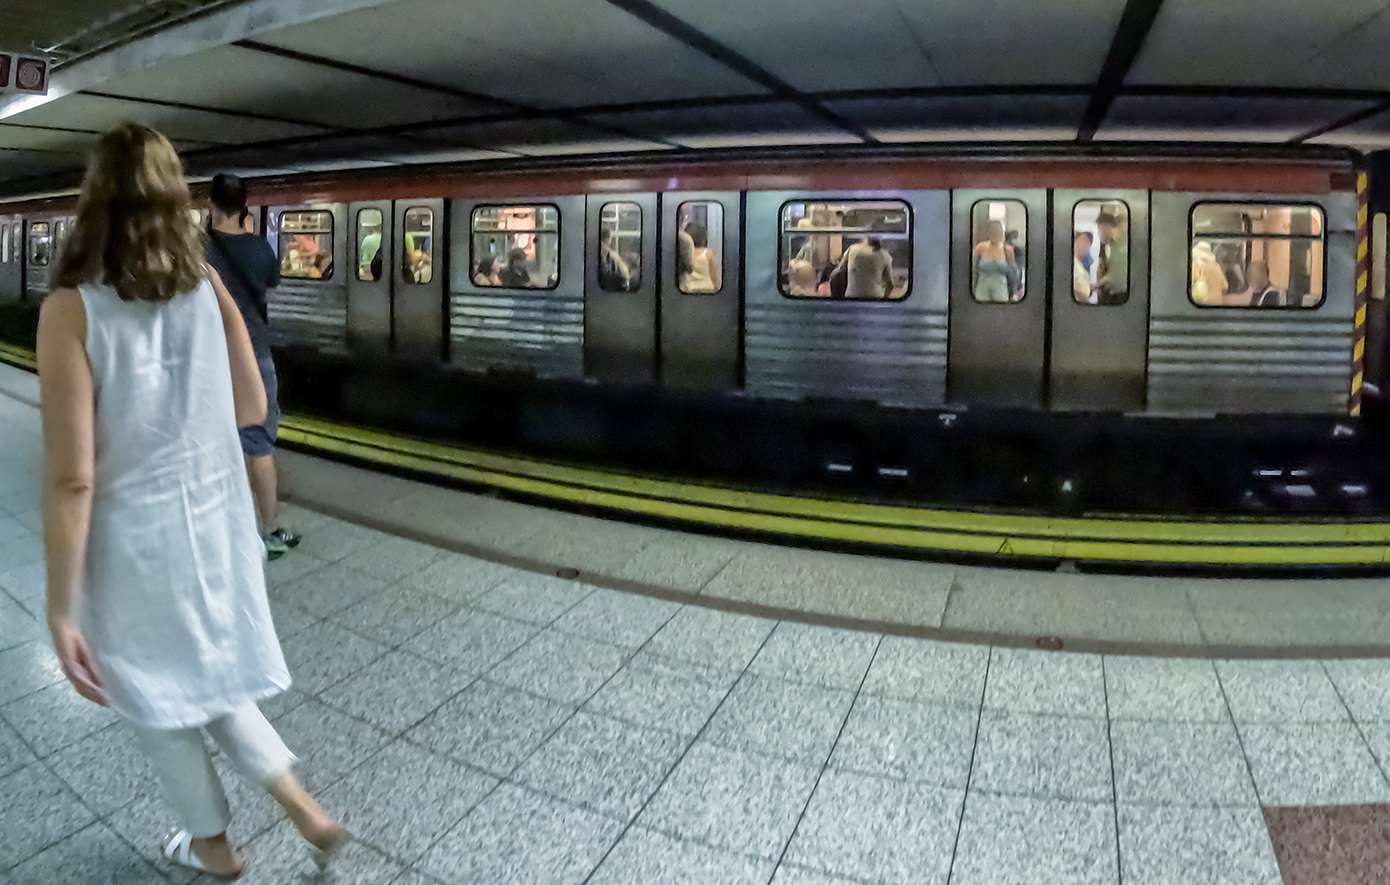 Προσωρινή διακοπή λειτουργίας του σταθμού «Κορυδαλλός» στη γραμμή 3 του Μετρό λόγω εργασιών